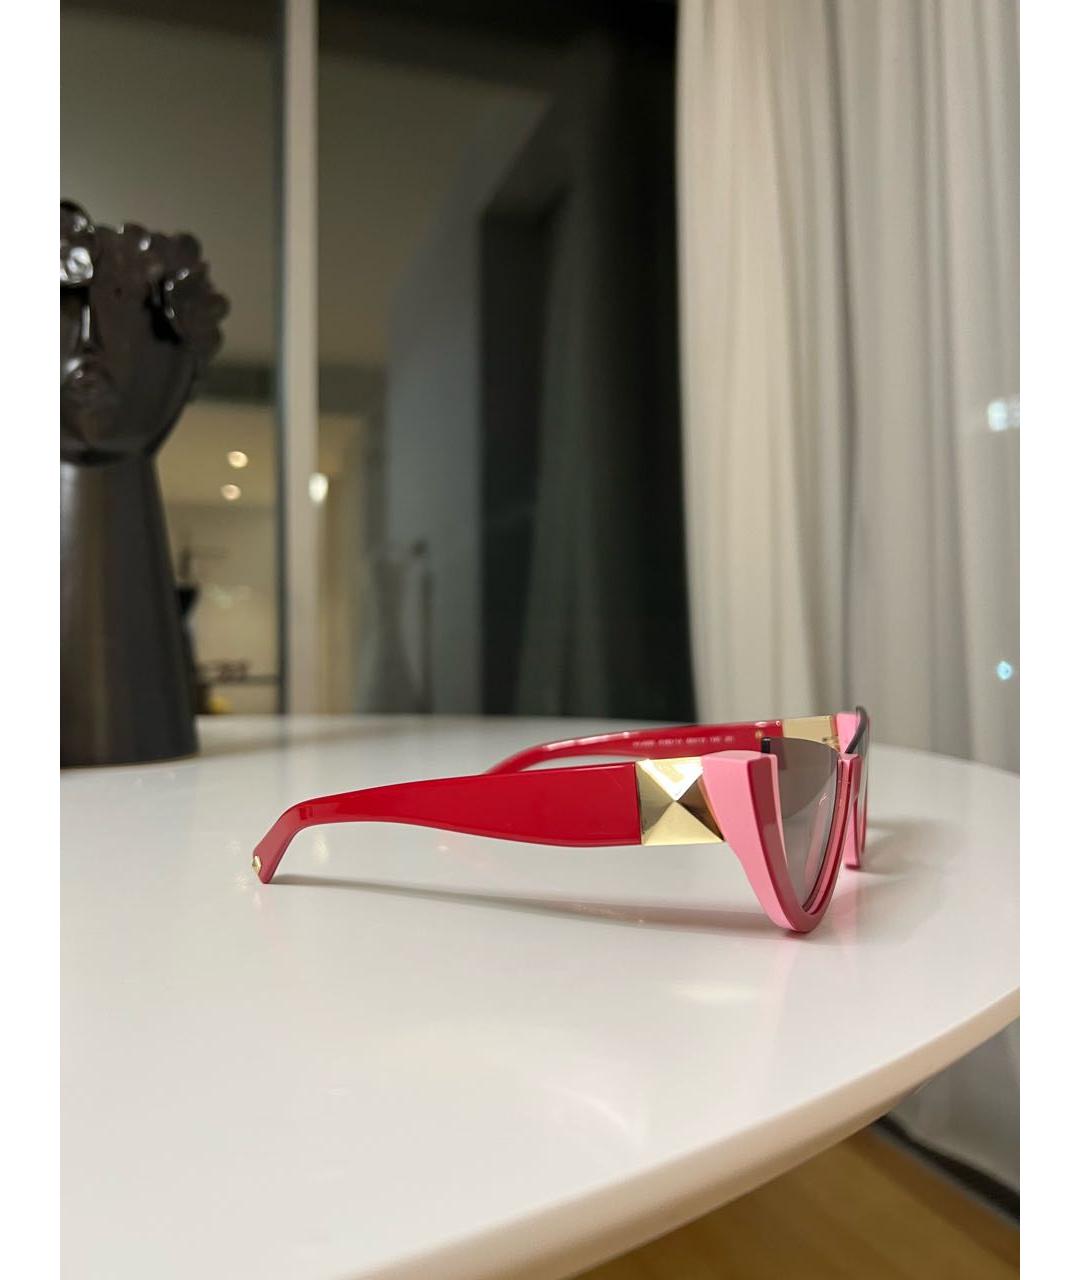 VALENTINO Розовые пластиковые солнцезащитные очки, фото 2